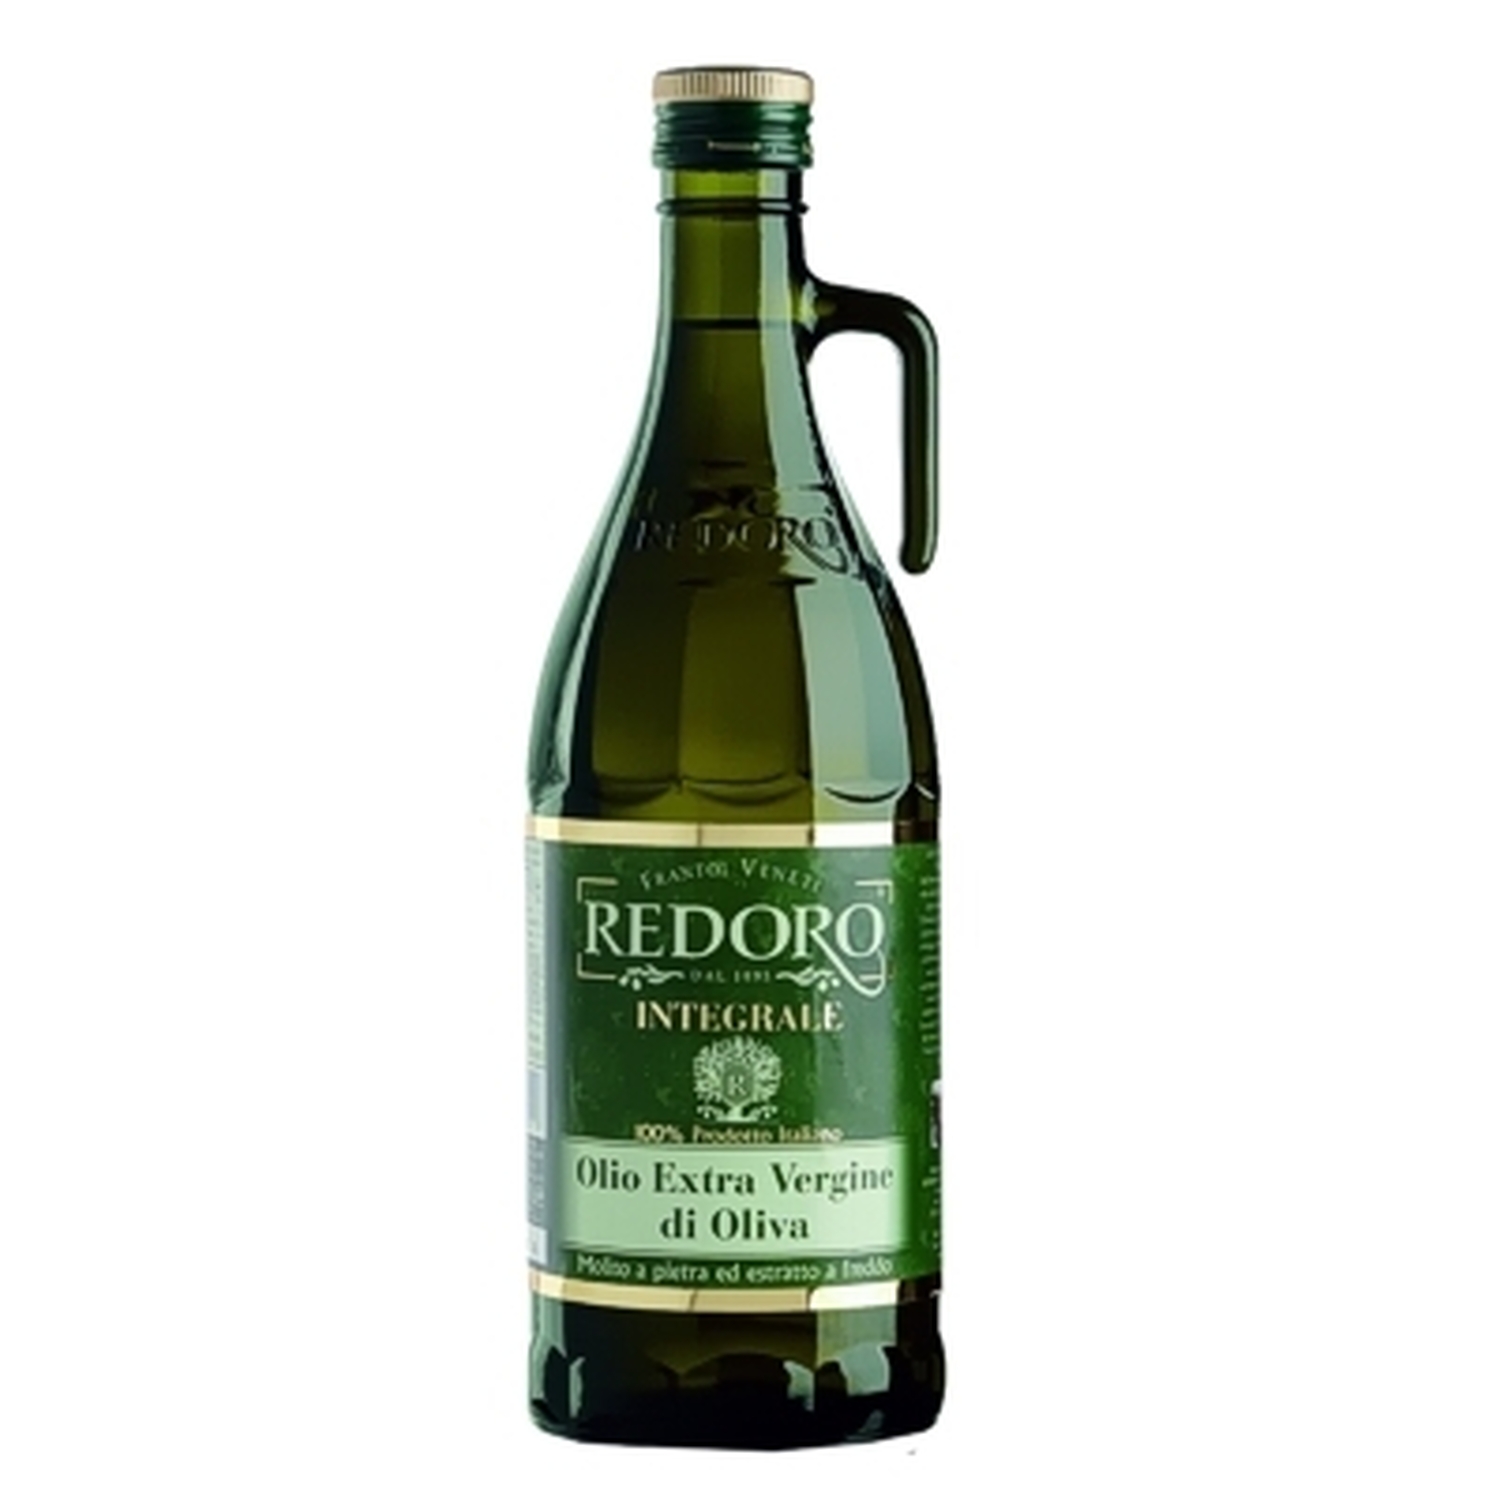 Olivenöl extra nativ Integrale Redoro Frantoi 1 lt. Venetien